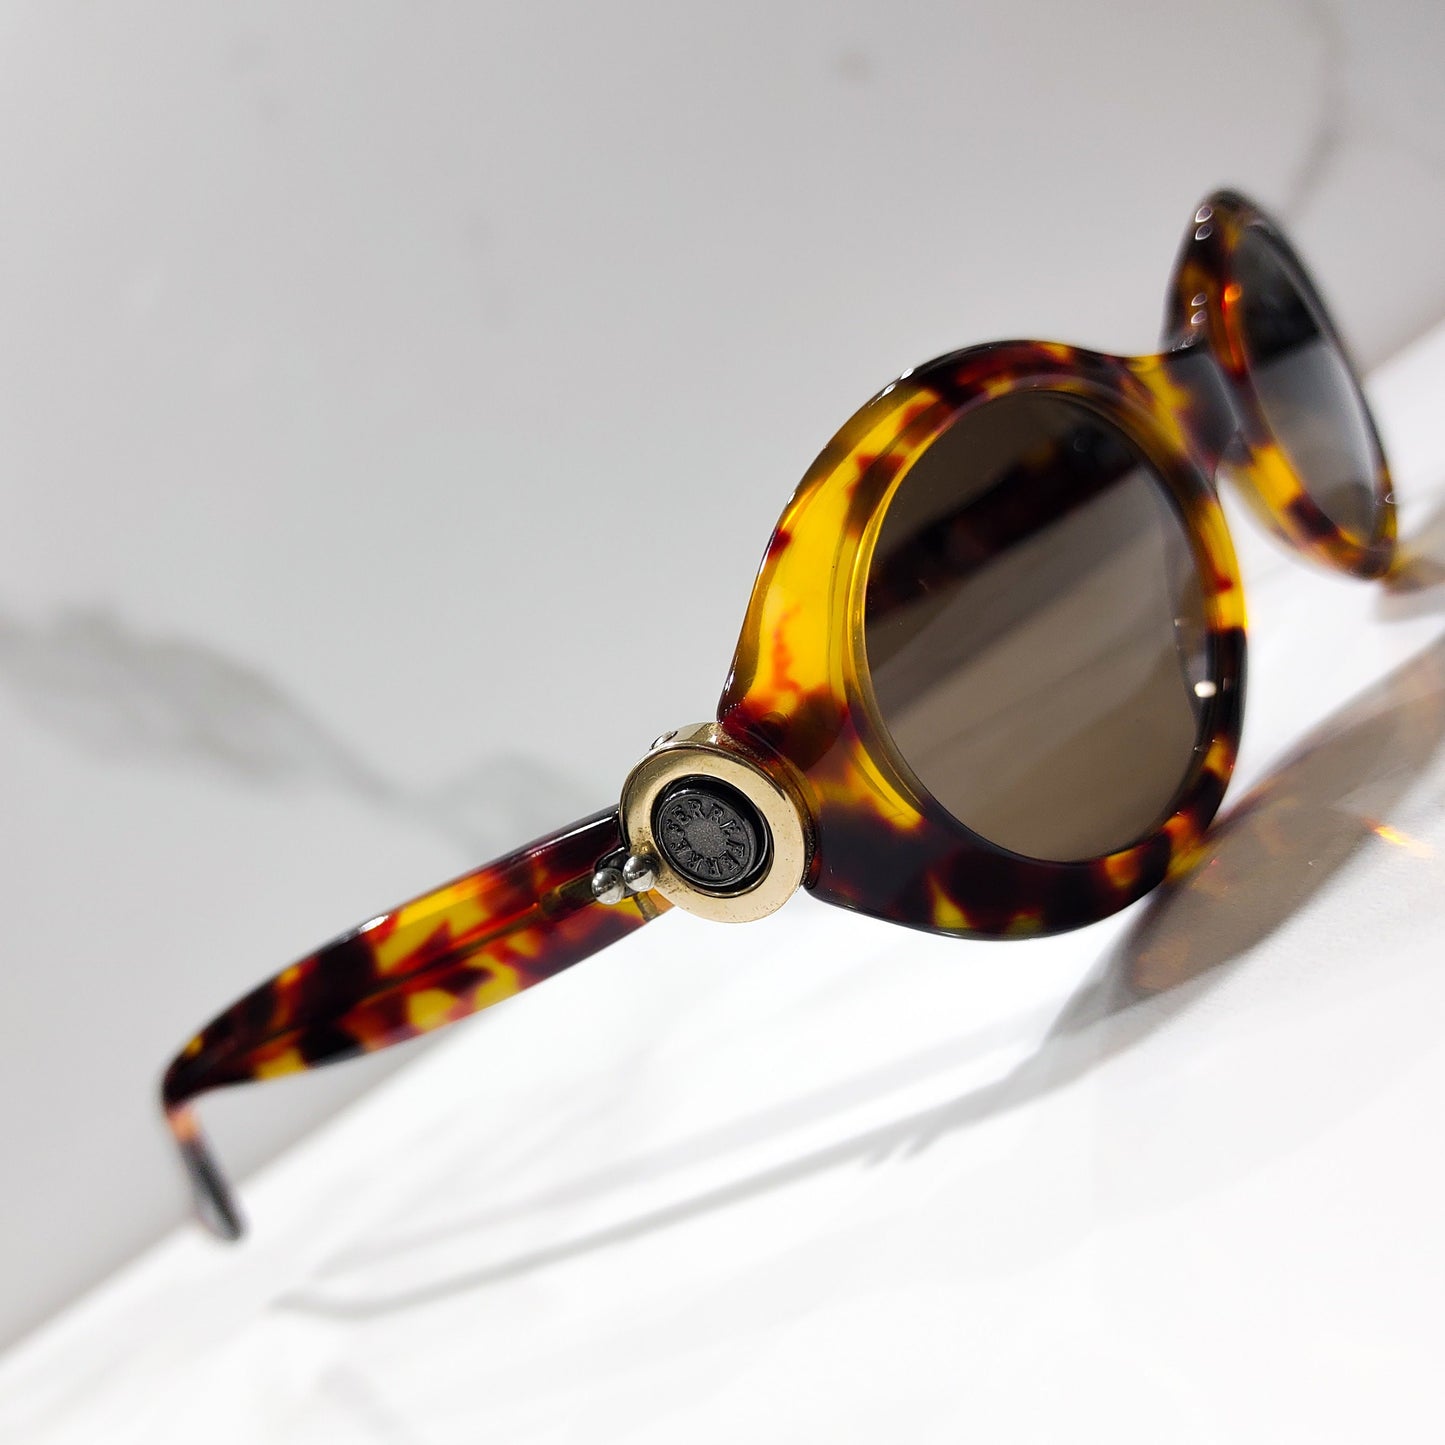 Gianfranco Ferre occhiali da sole vintage occhiali lunetta brille anni '90